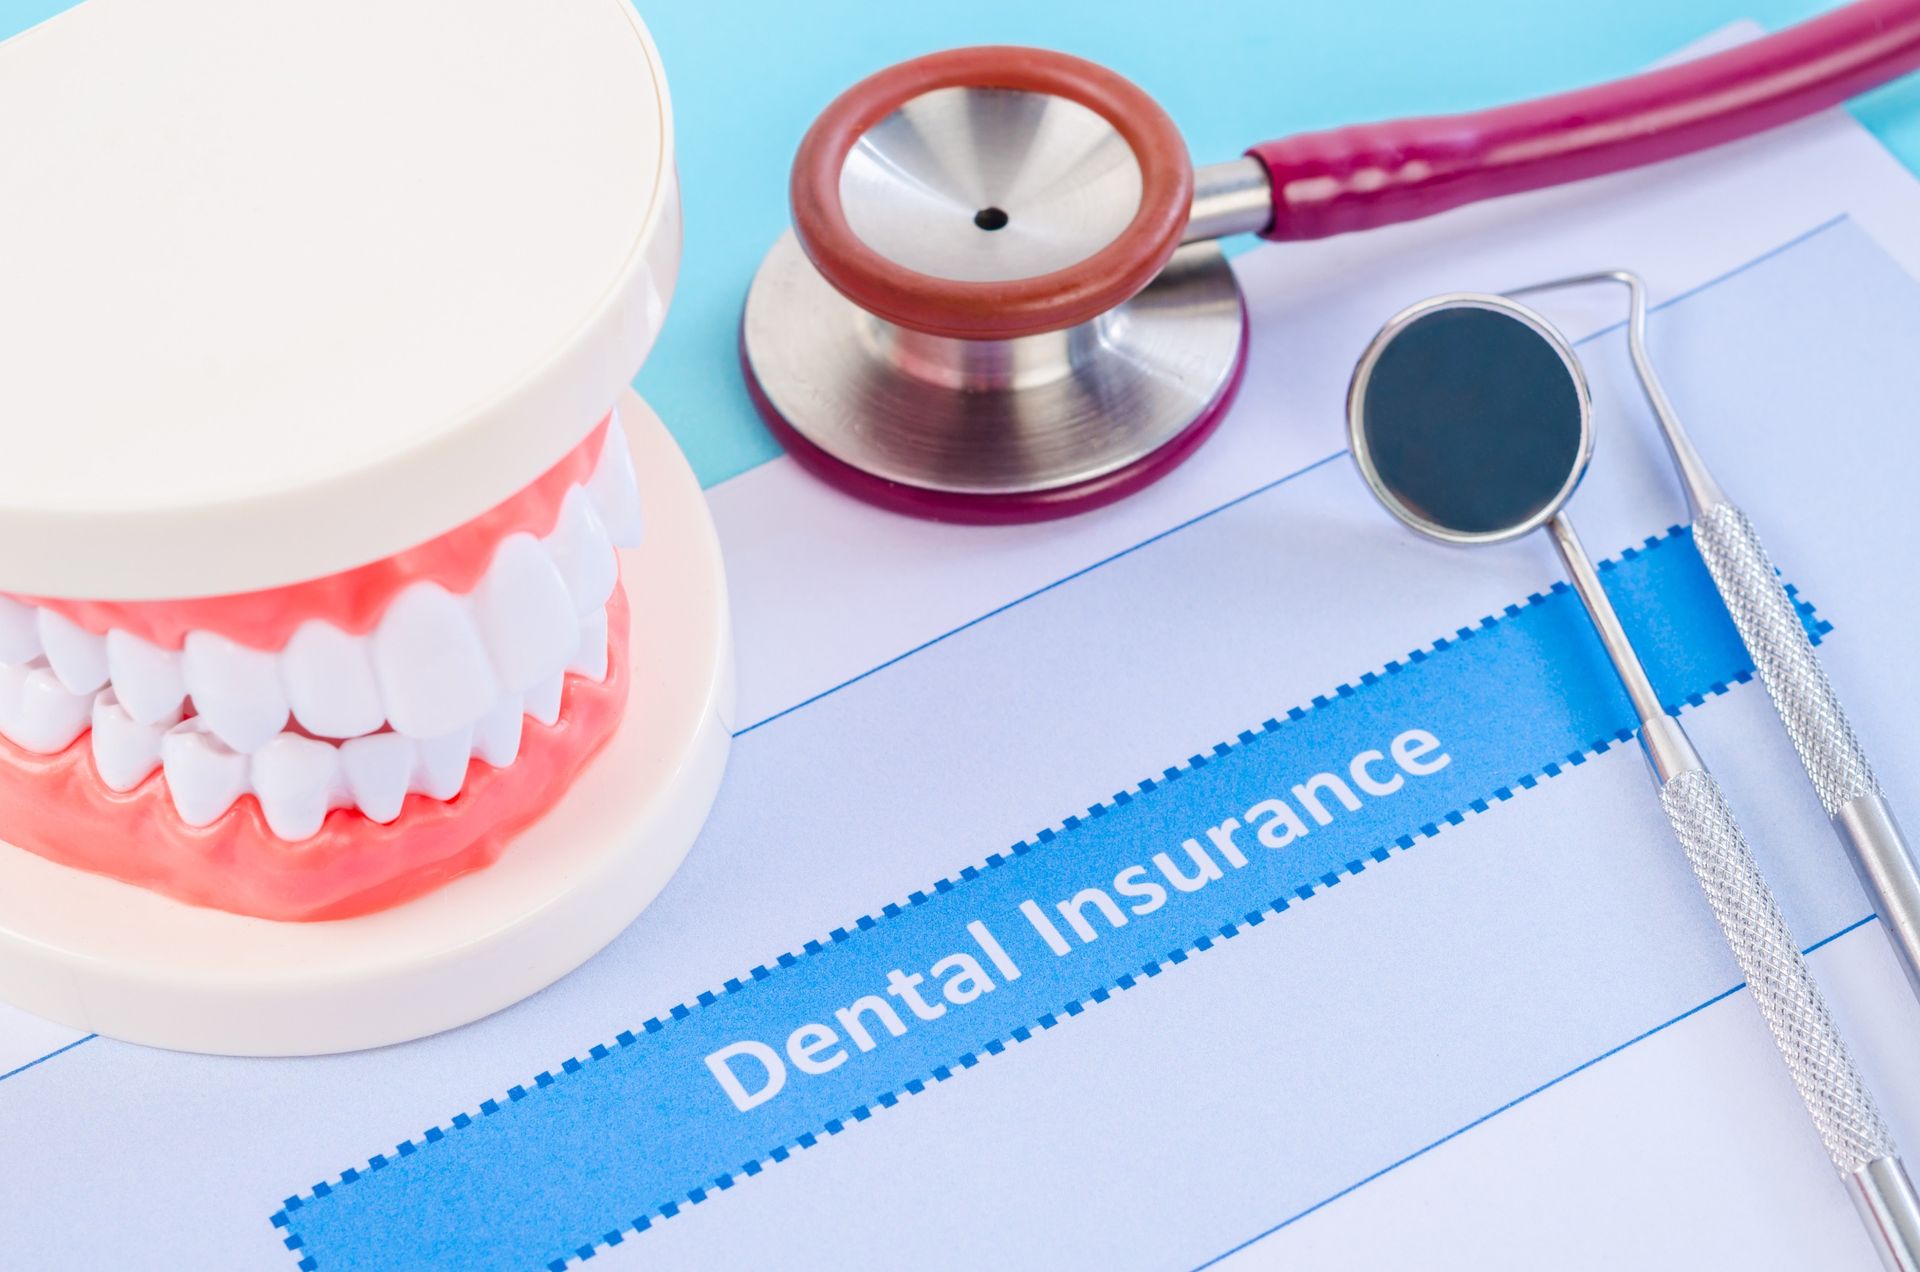 Steps for Choosing Dental Insurance